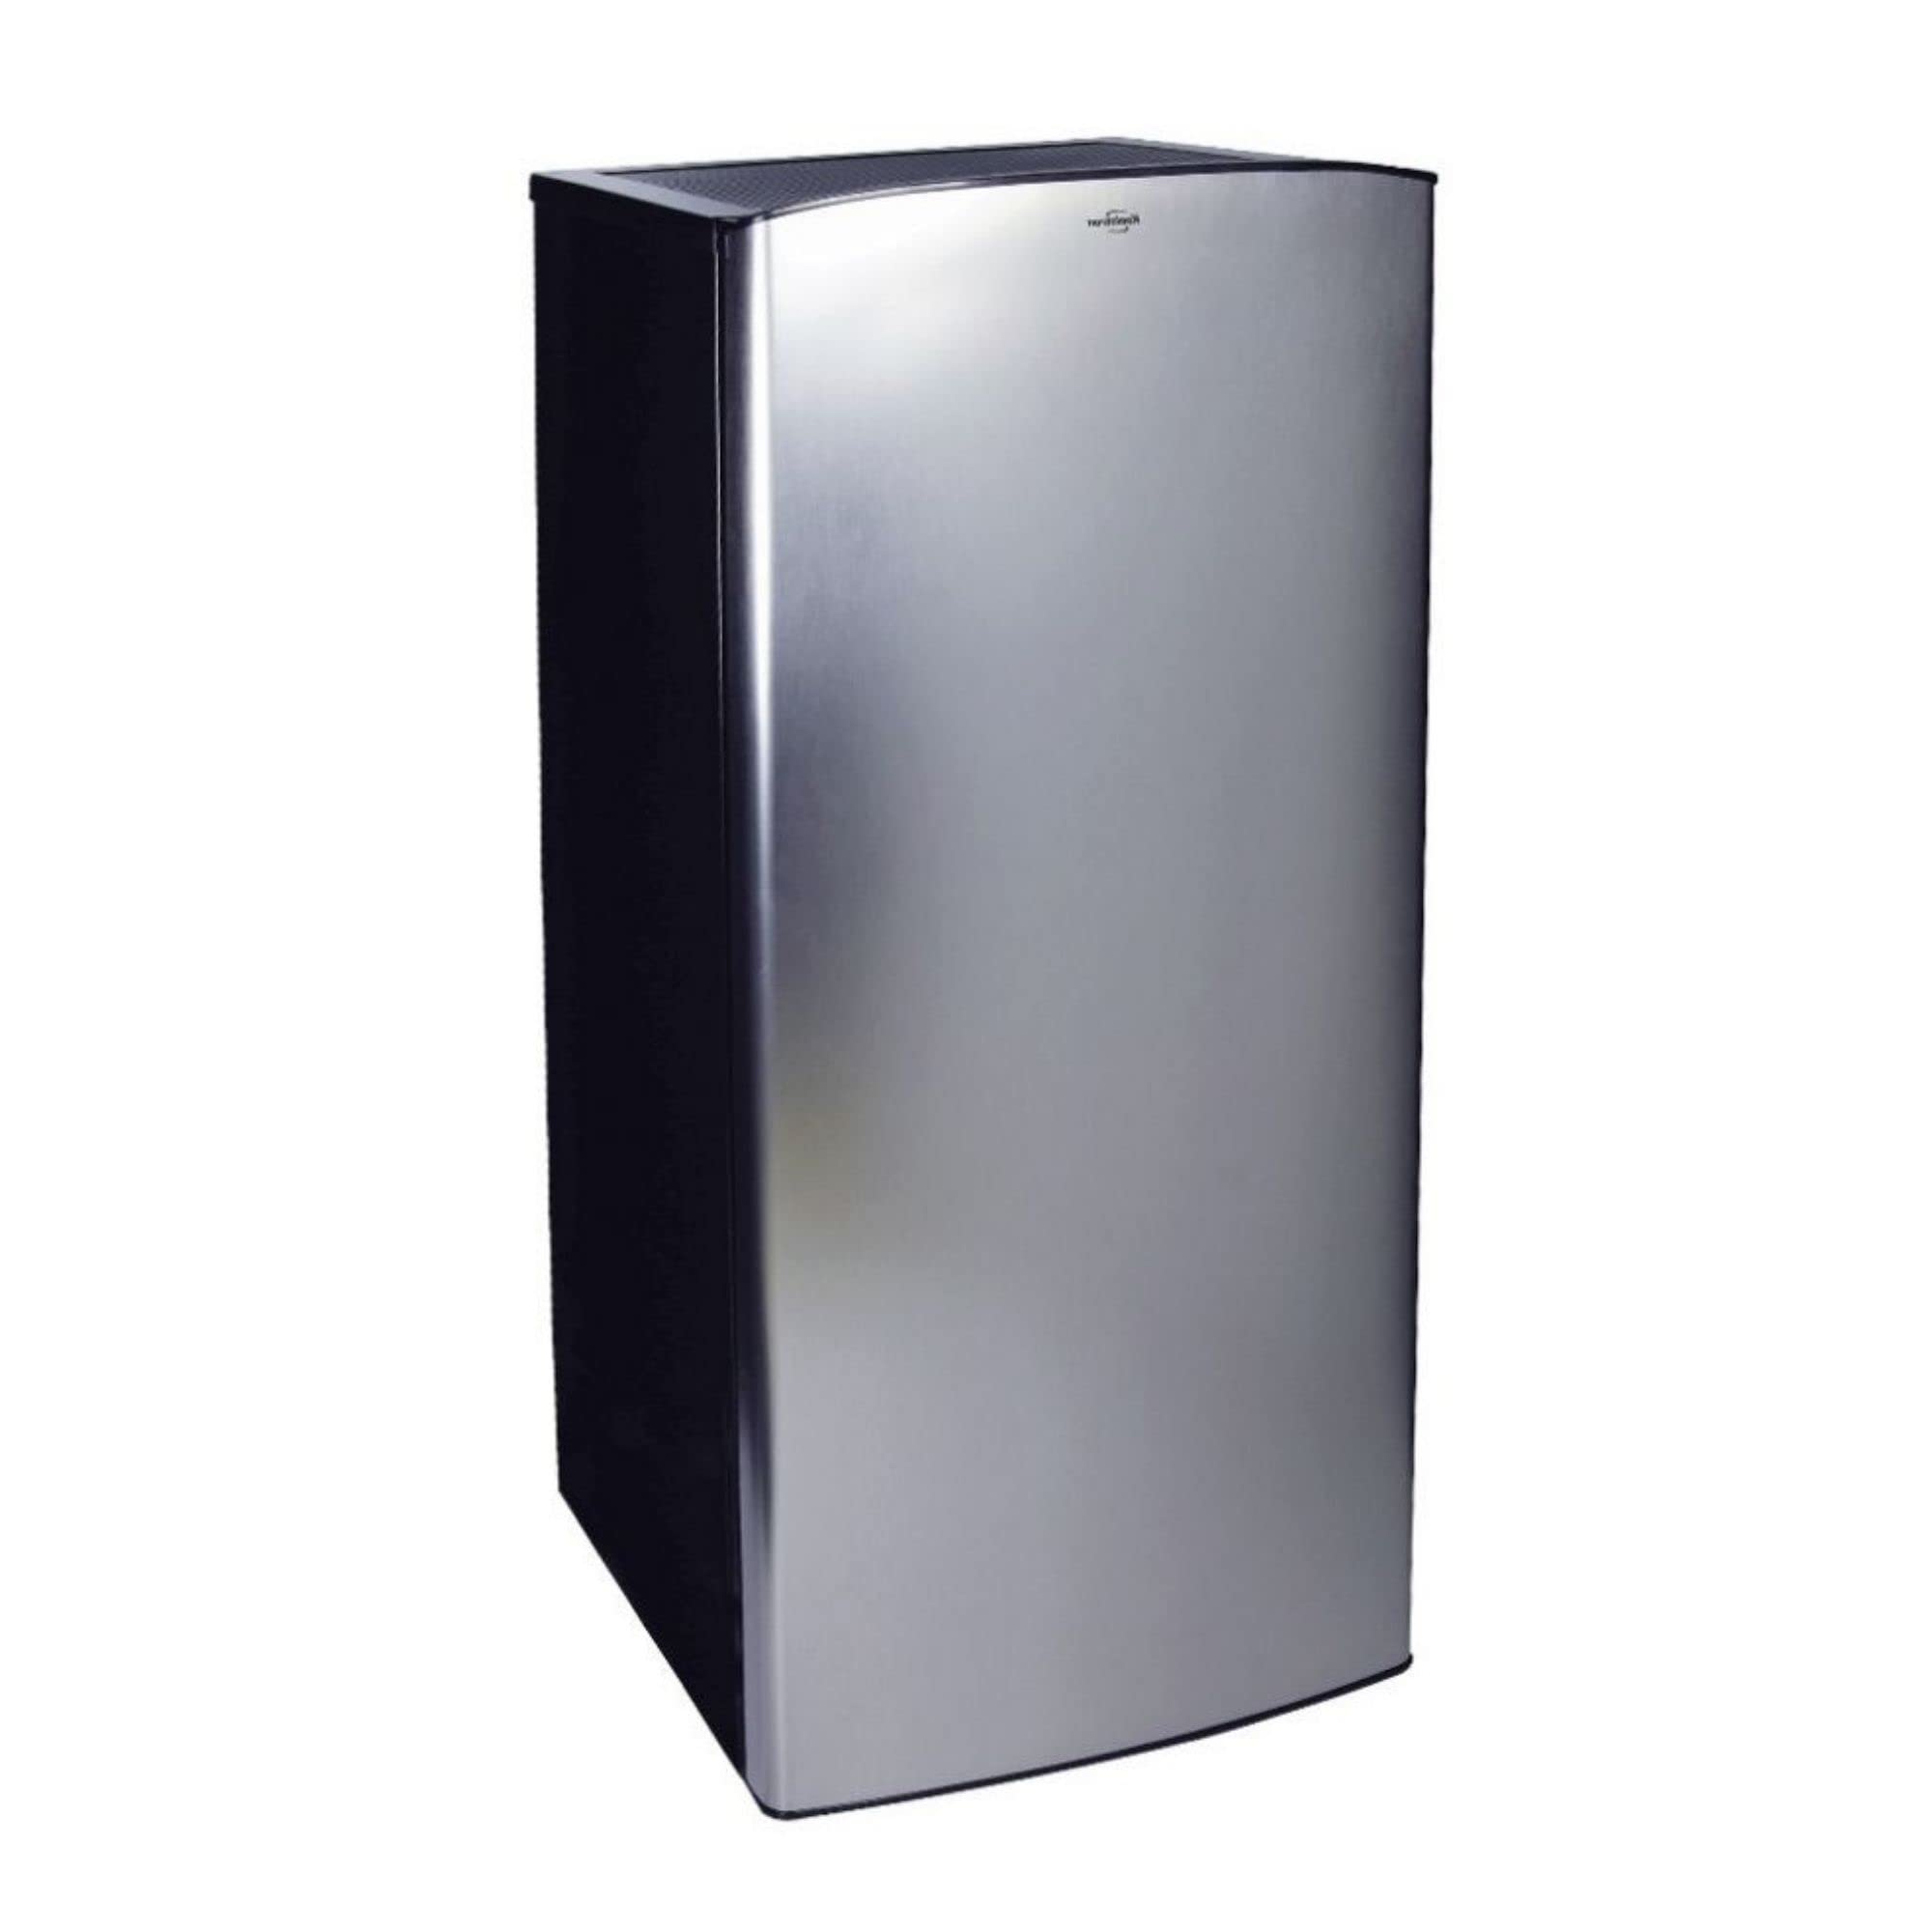  Koolatron 带冷冻室的不锈钢紧凑型冰箱，6.2 立方英尺（176 升），银色/黑色，节省空间的平背，0.9 立方英尺（25.5 升）冷冻室，钢化玻璃搁架，地下室，...